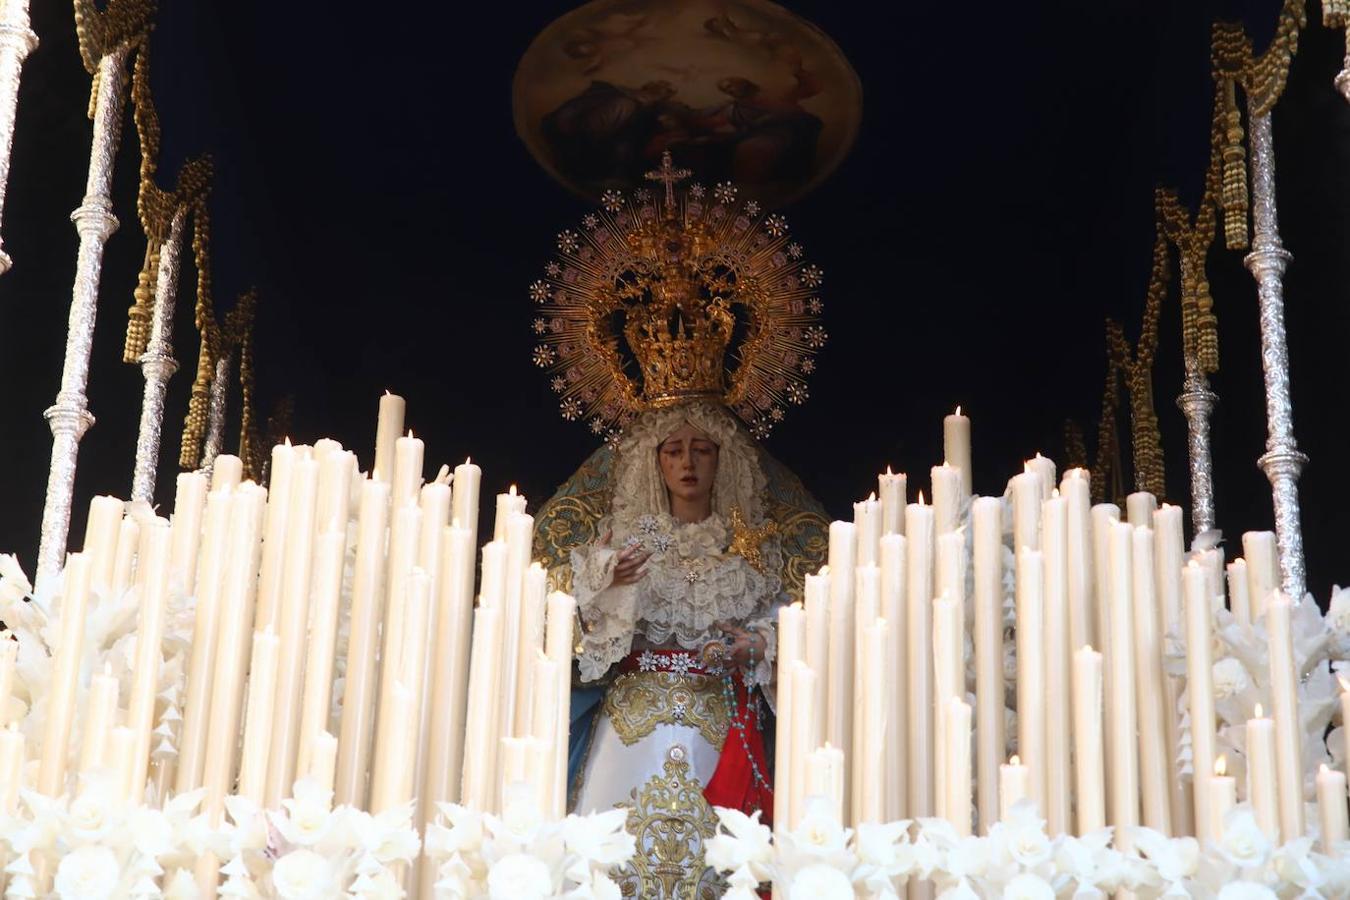 El regreso de la Estrella de Córdoba a su templo, cuando las segundas partes son buenas